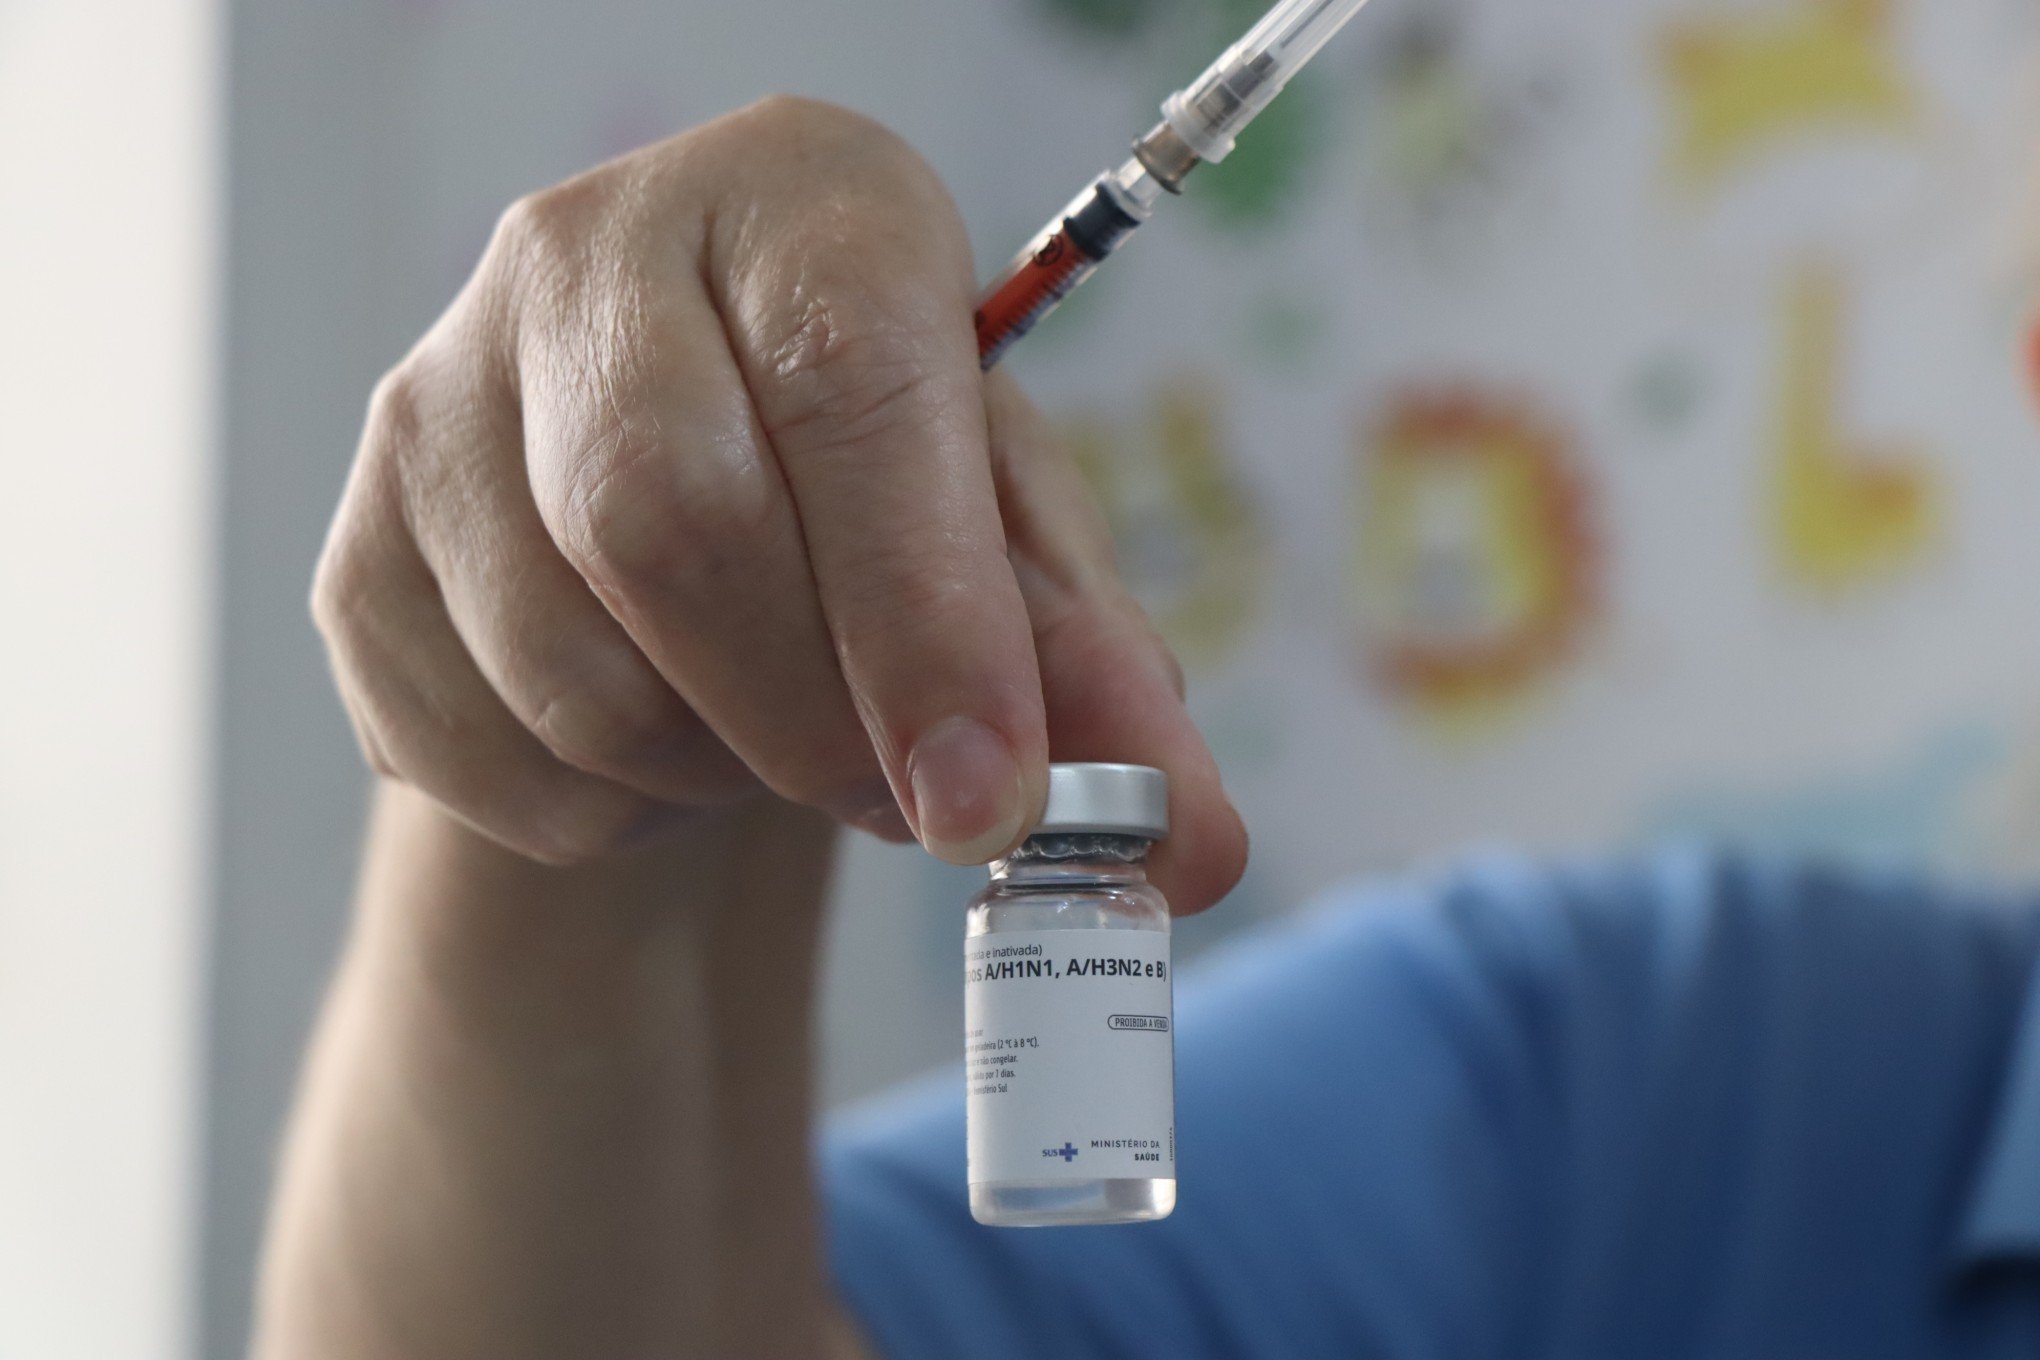 VACINA DA GRIPE: Drive-thru da vacinação acontece neste sábado em Novo Hamburgo; veja quem pode se imunizar